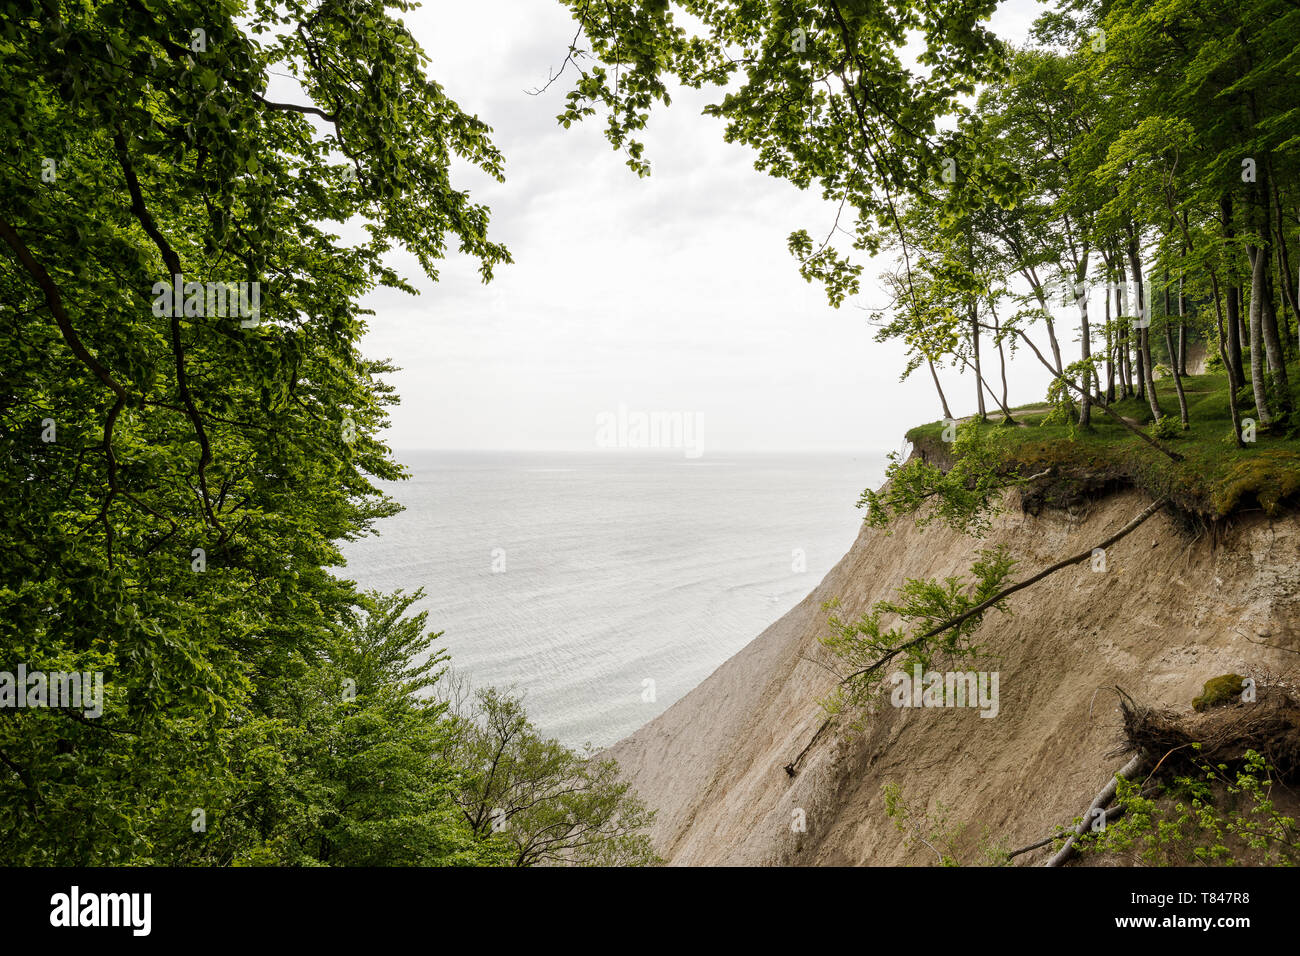 Paysage avec des arbres sur le bord des falaises de craie, le Parc National de Jasmund, Sassnitz, Rügen, Mecklembourg-Poméranie-Occidentale, Allemagne Banque D'Images